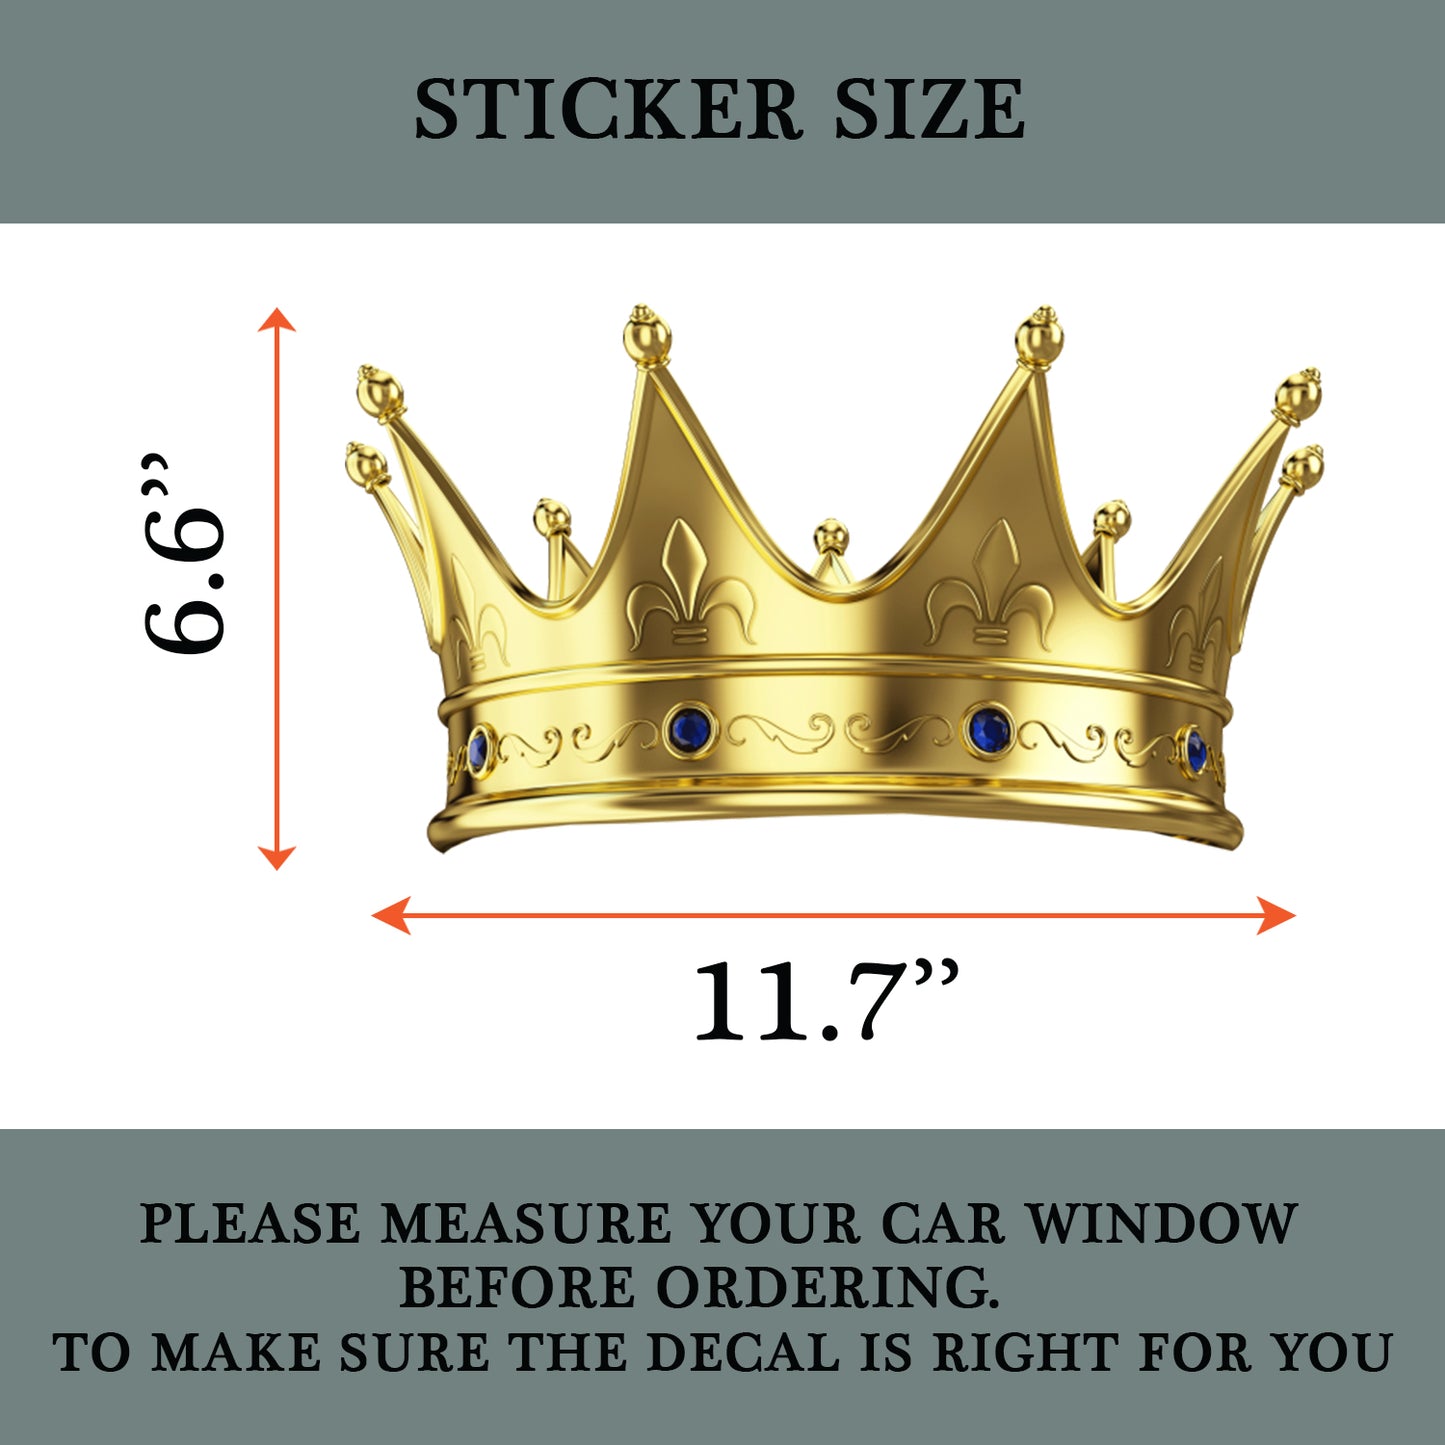 Kings Crown Car Side Window Vinyl Sticker- Funny Car Side Window Decal